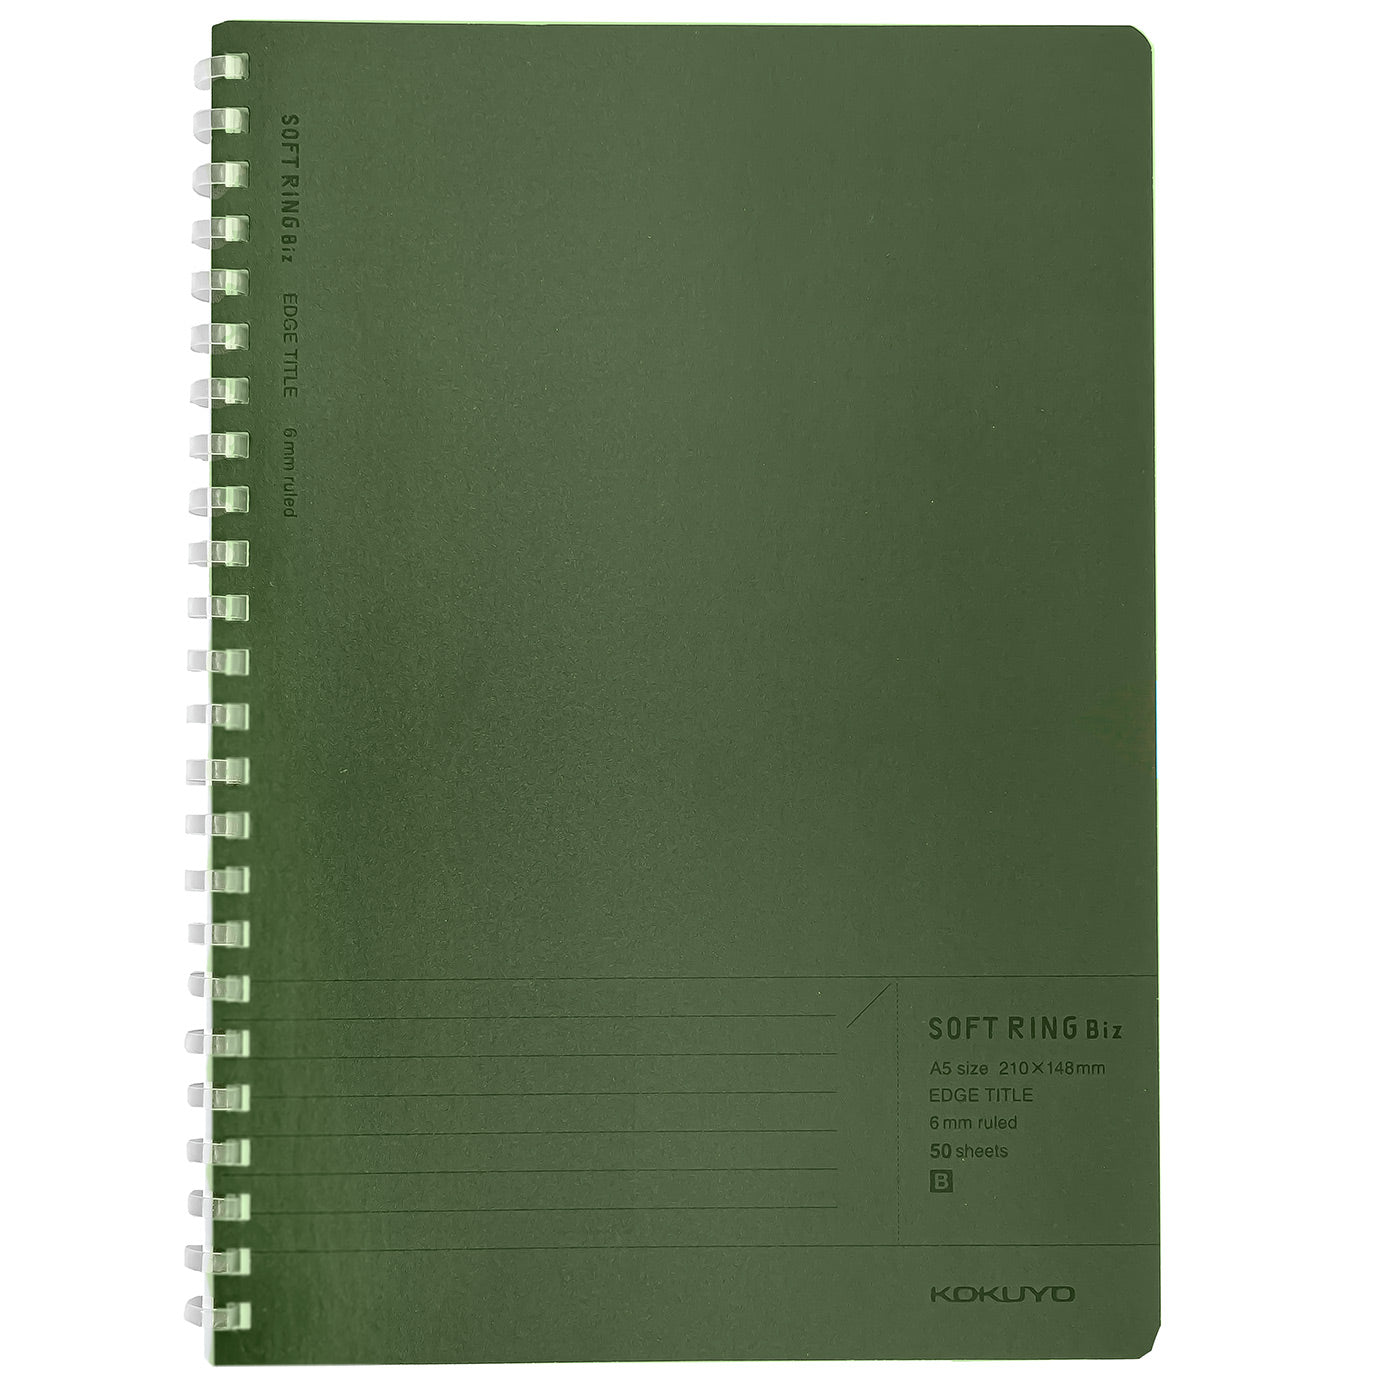 Kokuyo Biz A5 Soft Ring Notebook- Green